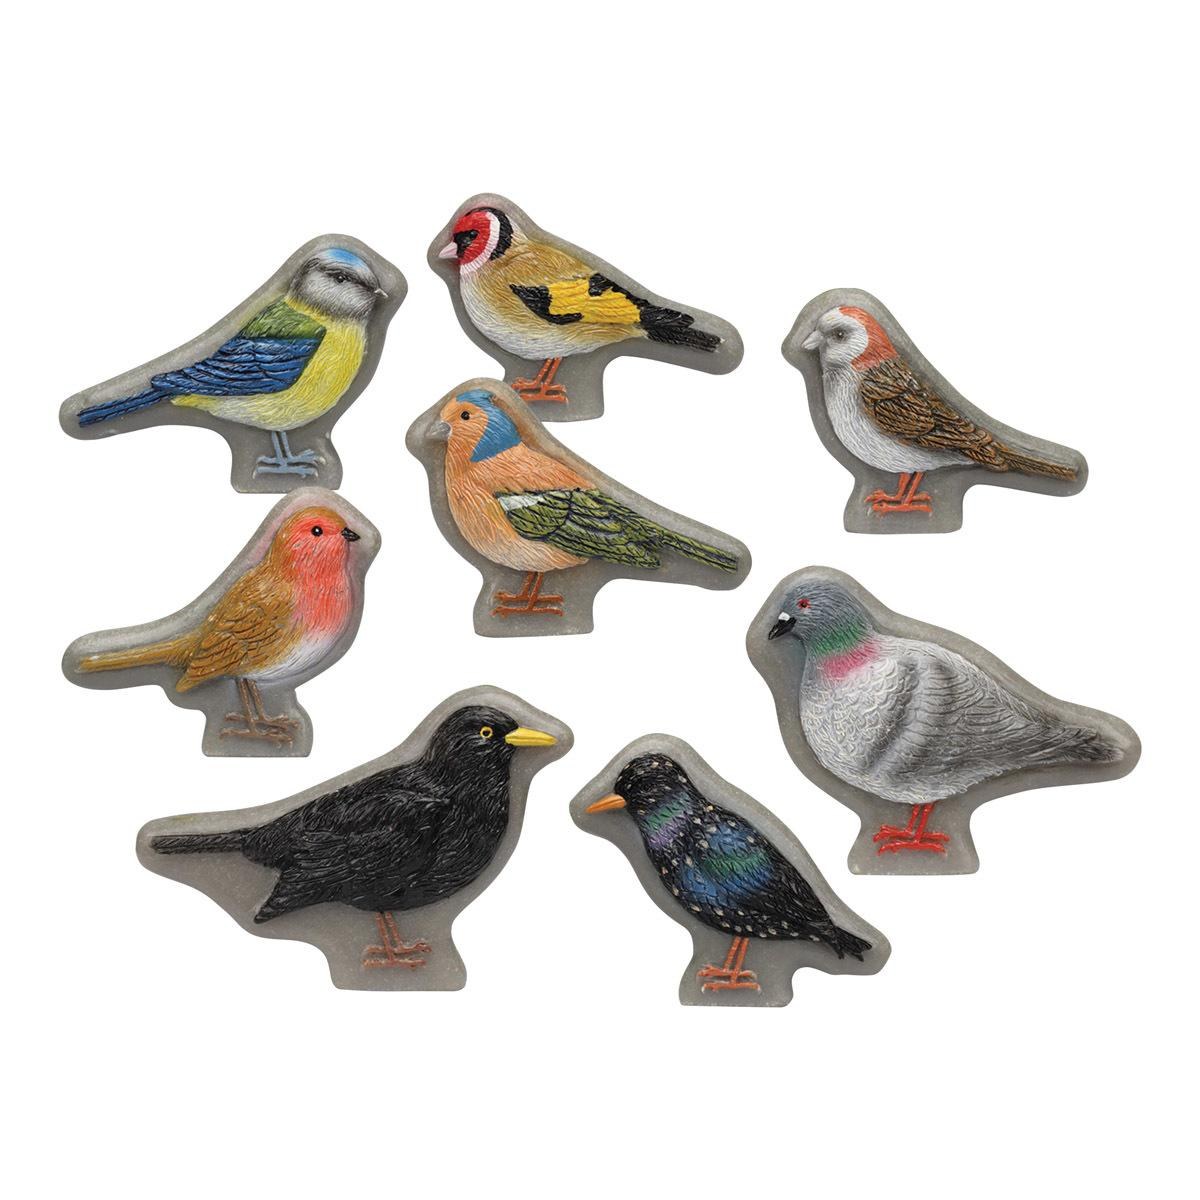 Yellow Door Sensory Play Stones: Birds - 8 Pieces